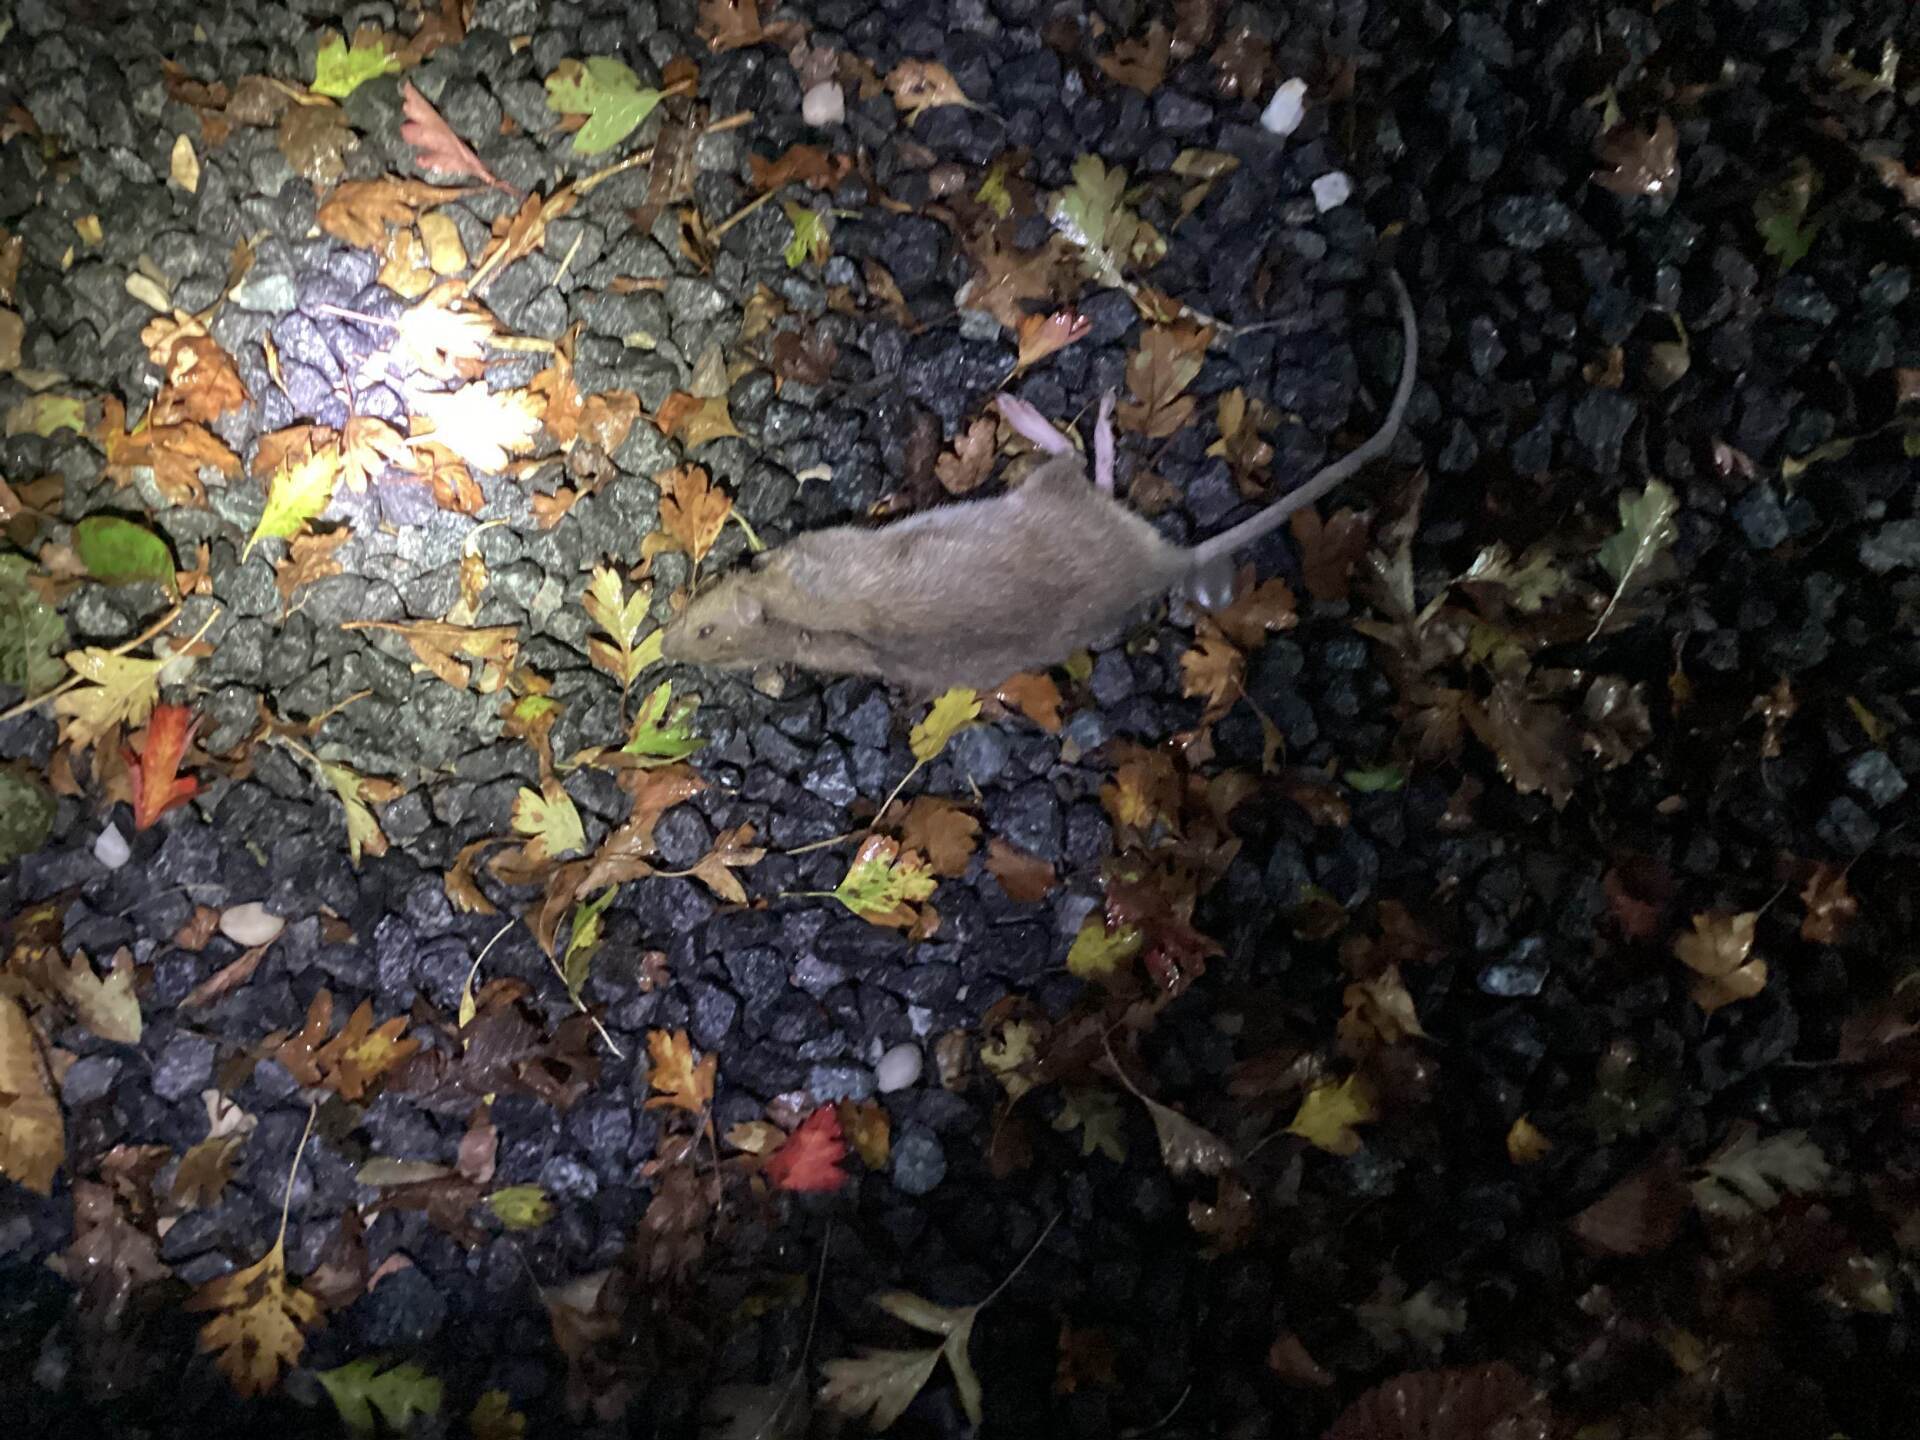 Død rotte i grus